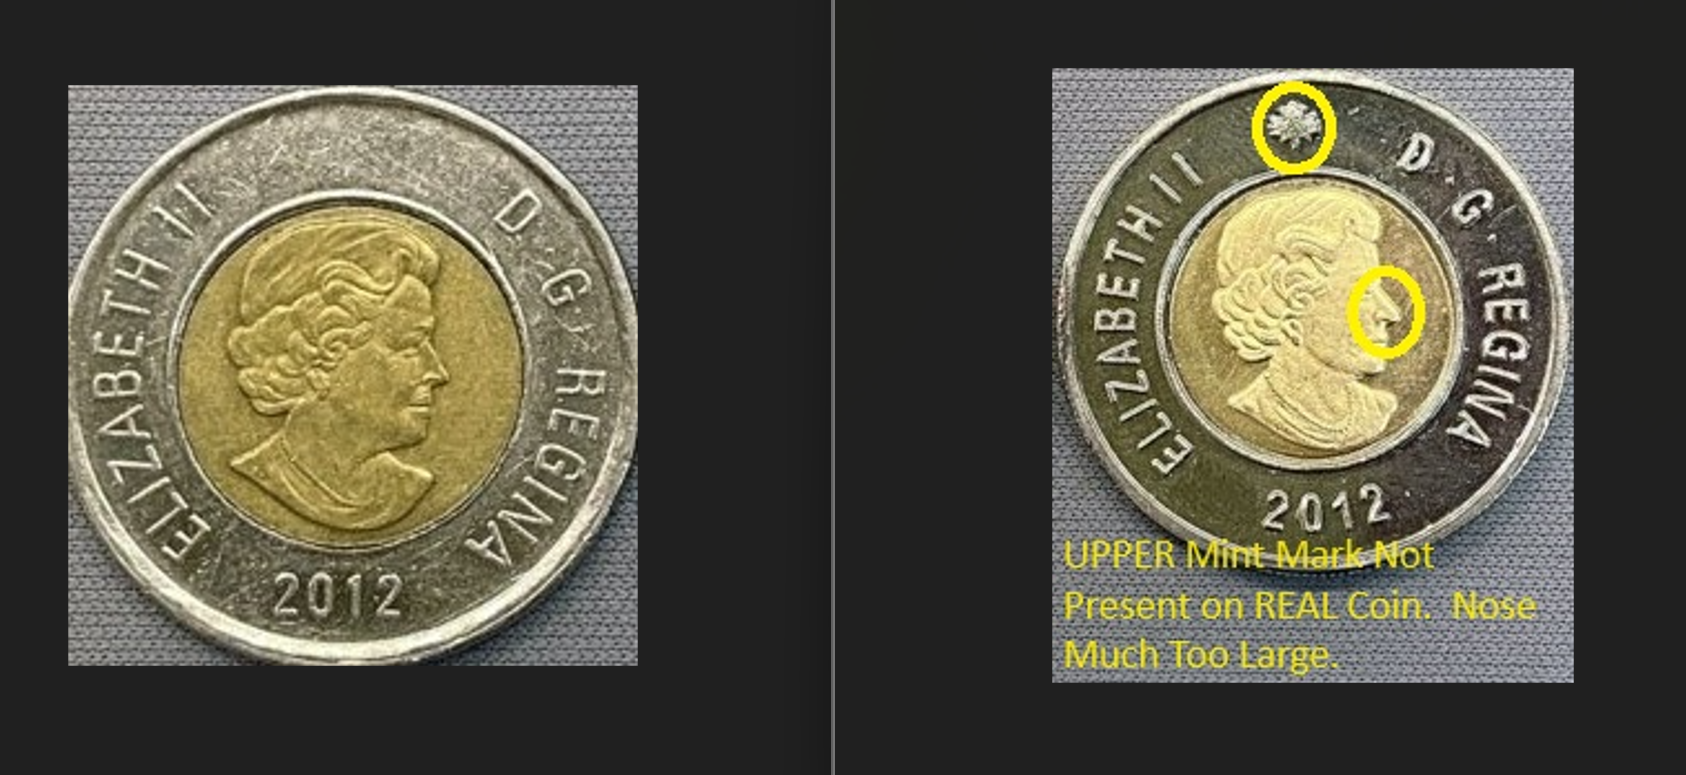 یک نوع تونی (سکه دو دلاری) تقلبی در آنتاریو و کبک شناسایی شده.